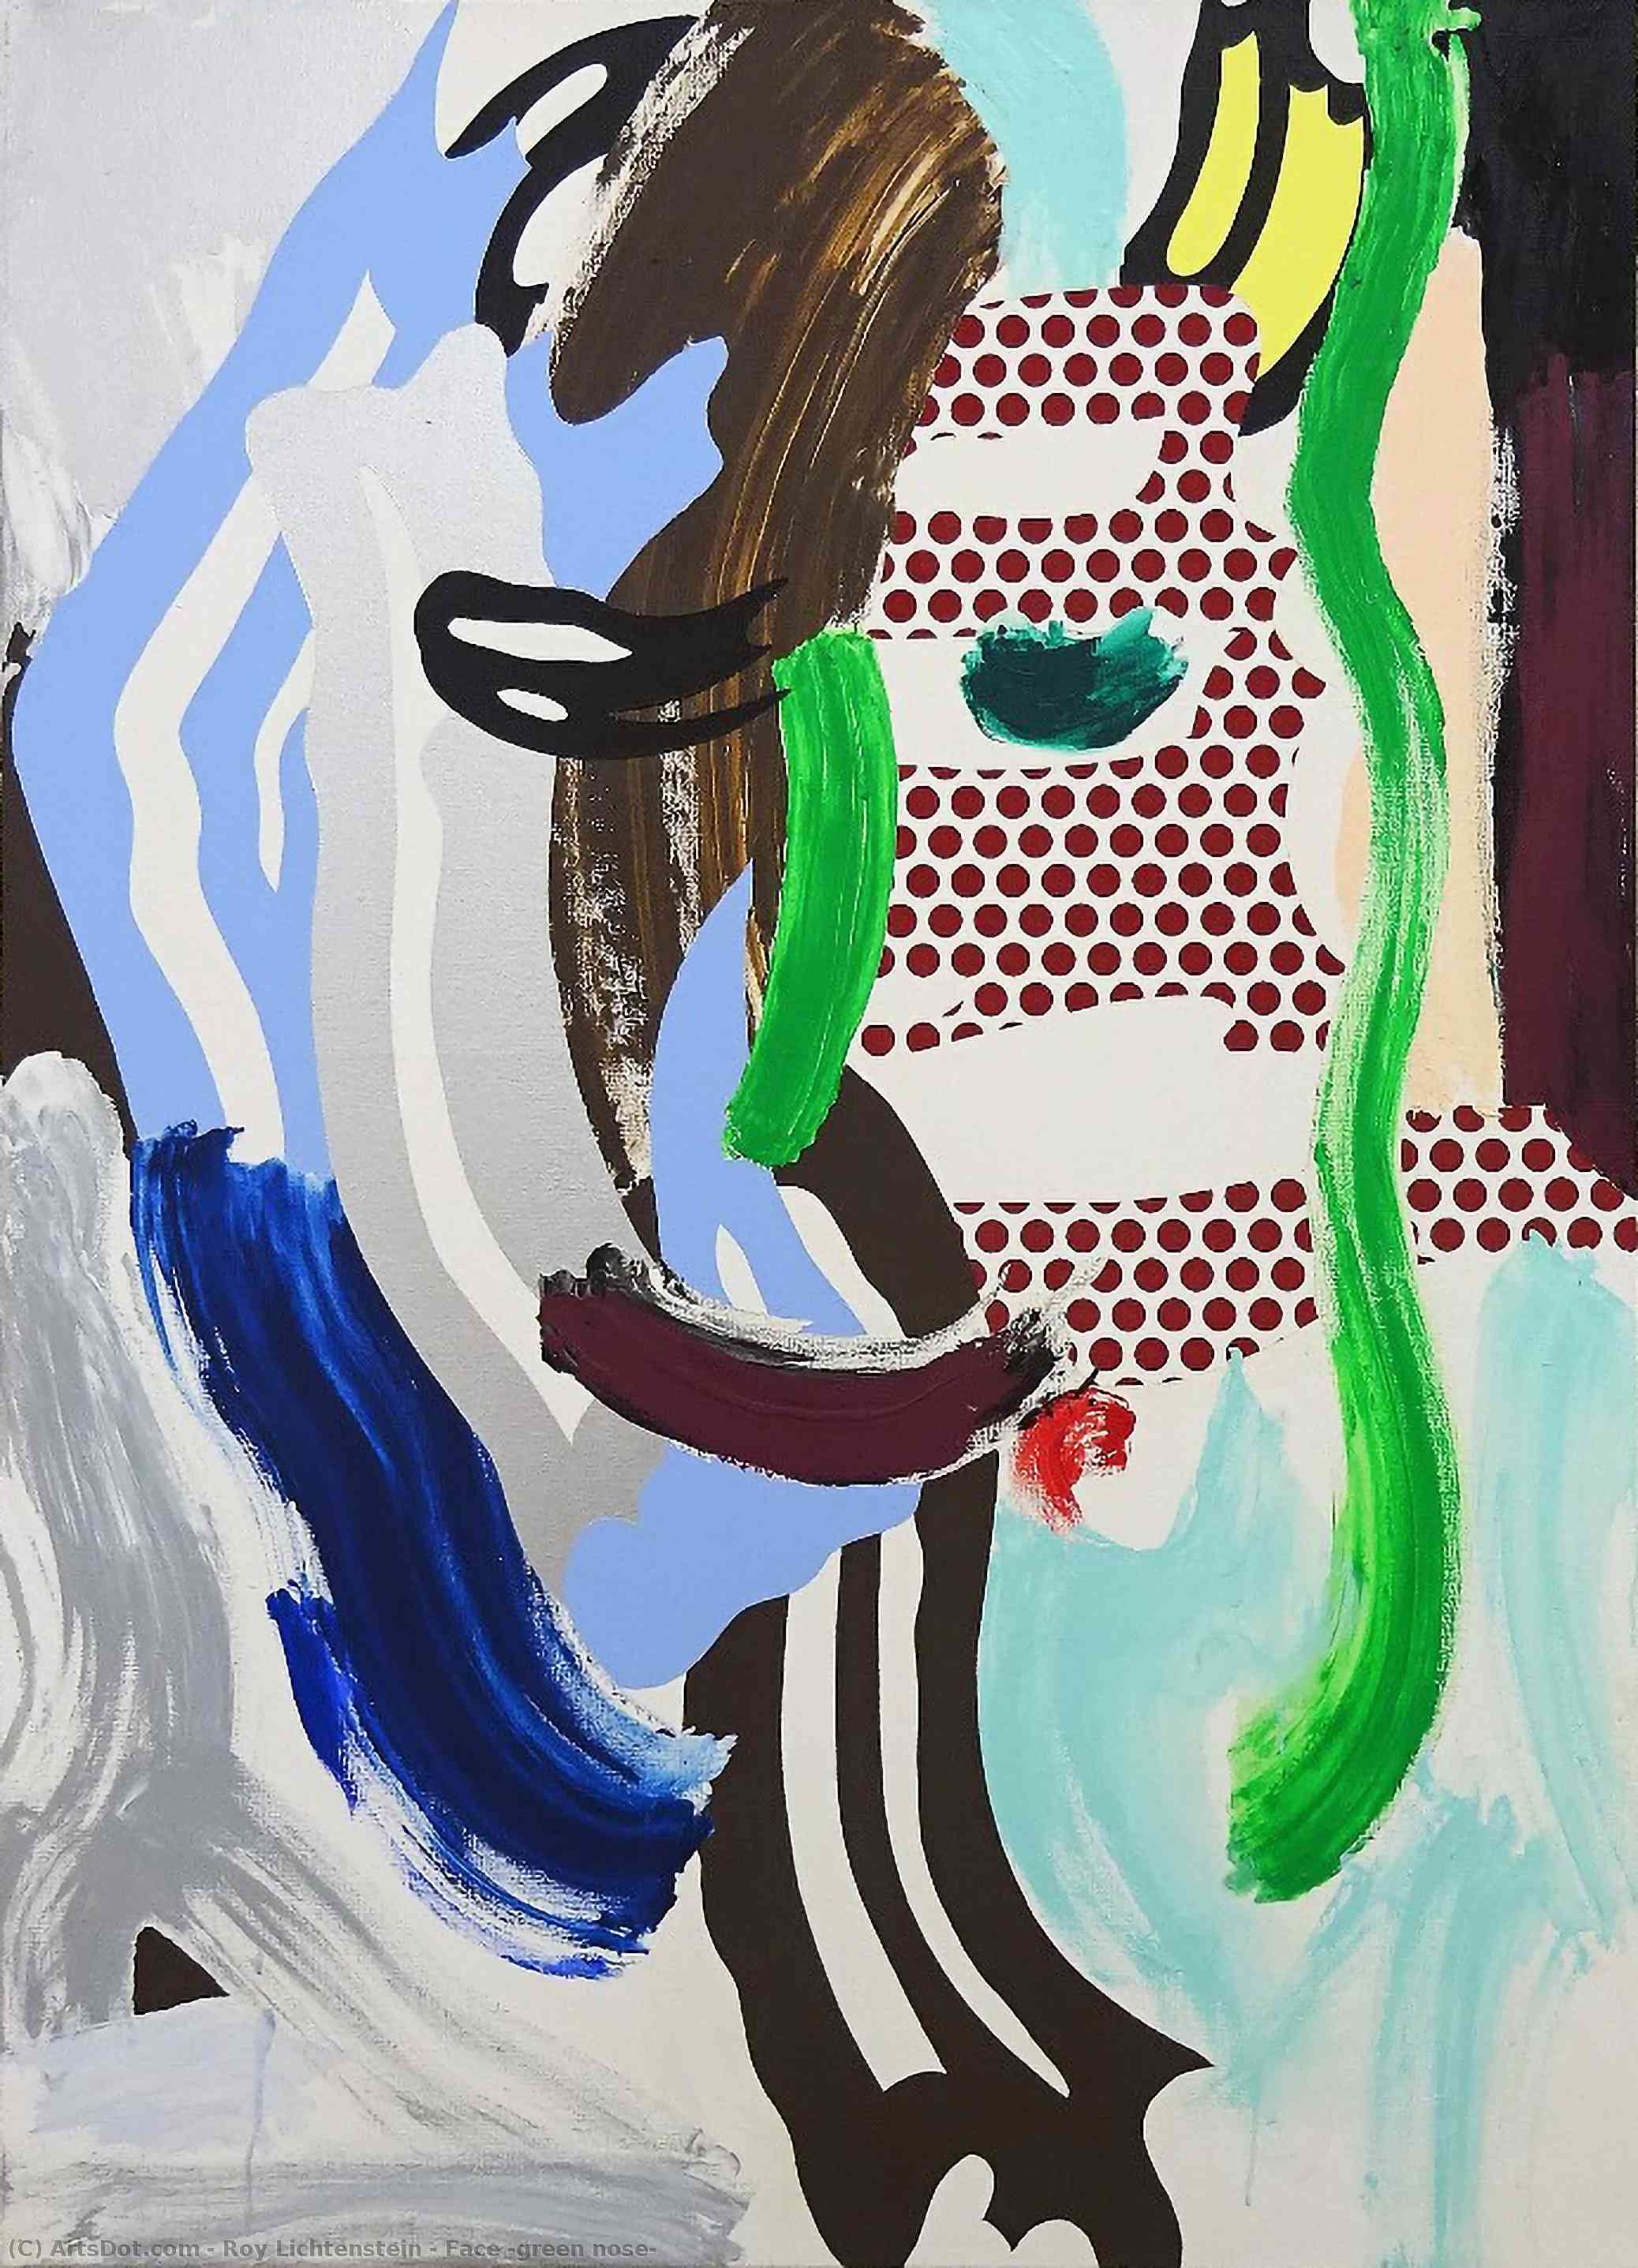 Wikoo.org - موسوعة الفنون الجميلة - اللوحة، العمل الفني Roy Lichtenstein - Face (green nose)